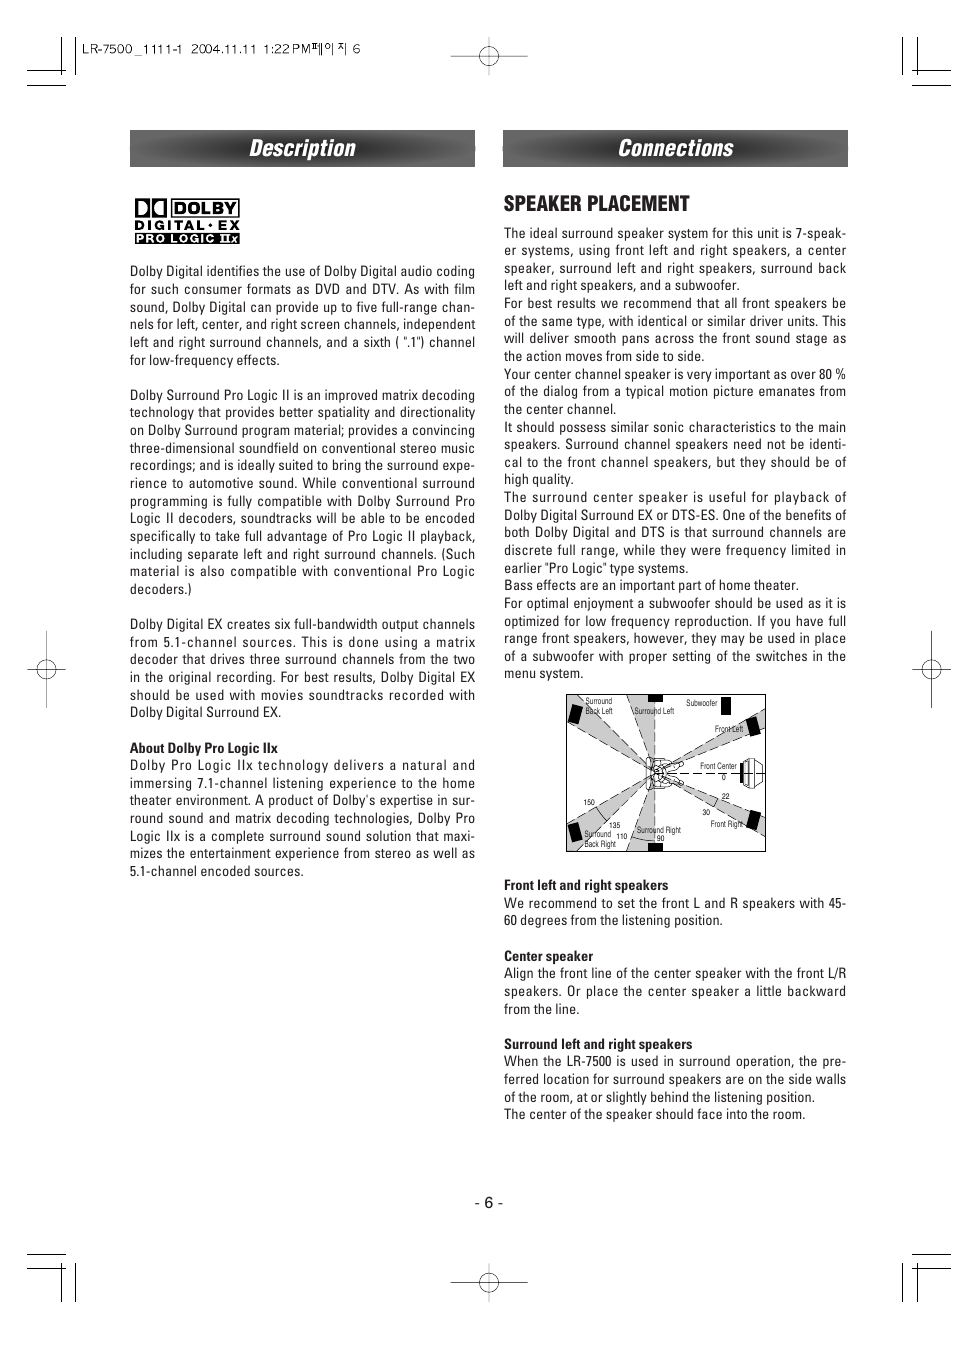 Connections, Description, Speaker placement | Luxman LR-7500 User Manual | Page 6 / 36